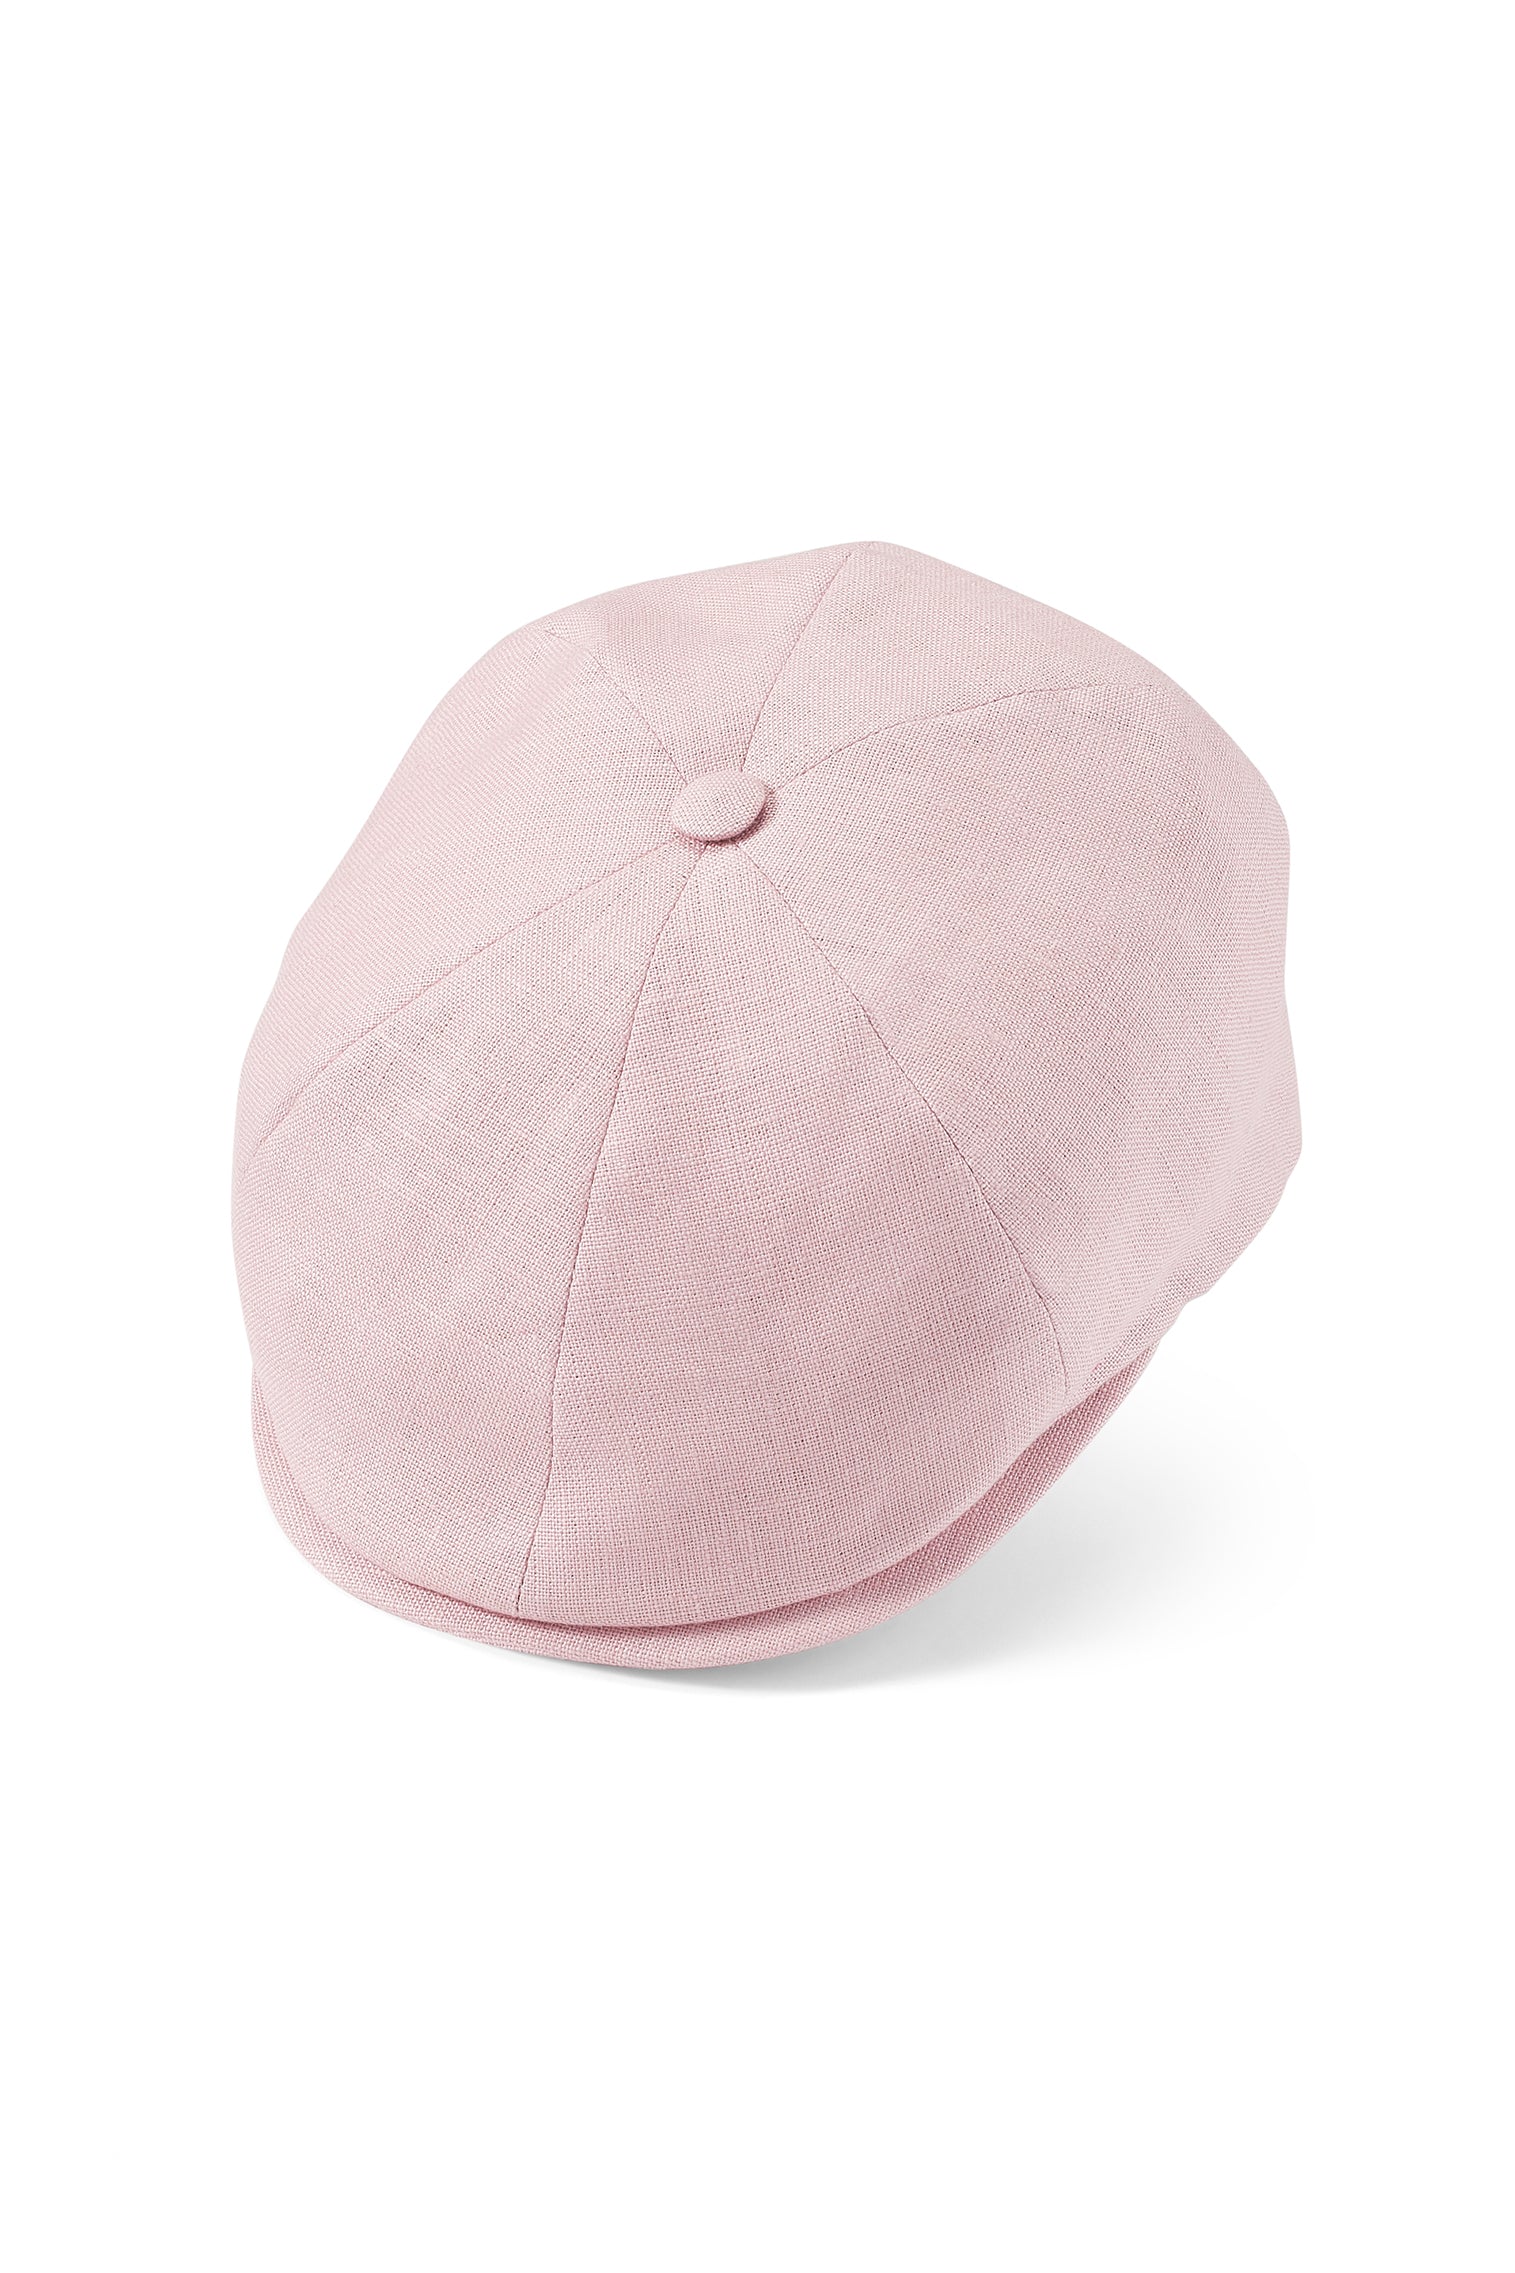 Tahoe Pink Bakerboy Cap - New Season Men's Hats - Lock & Co. Hatters London UK